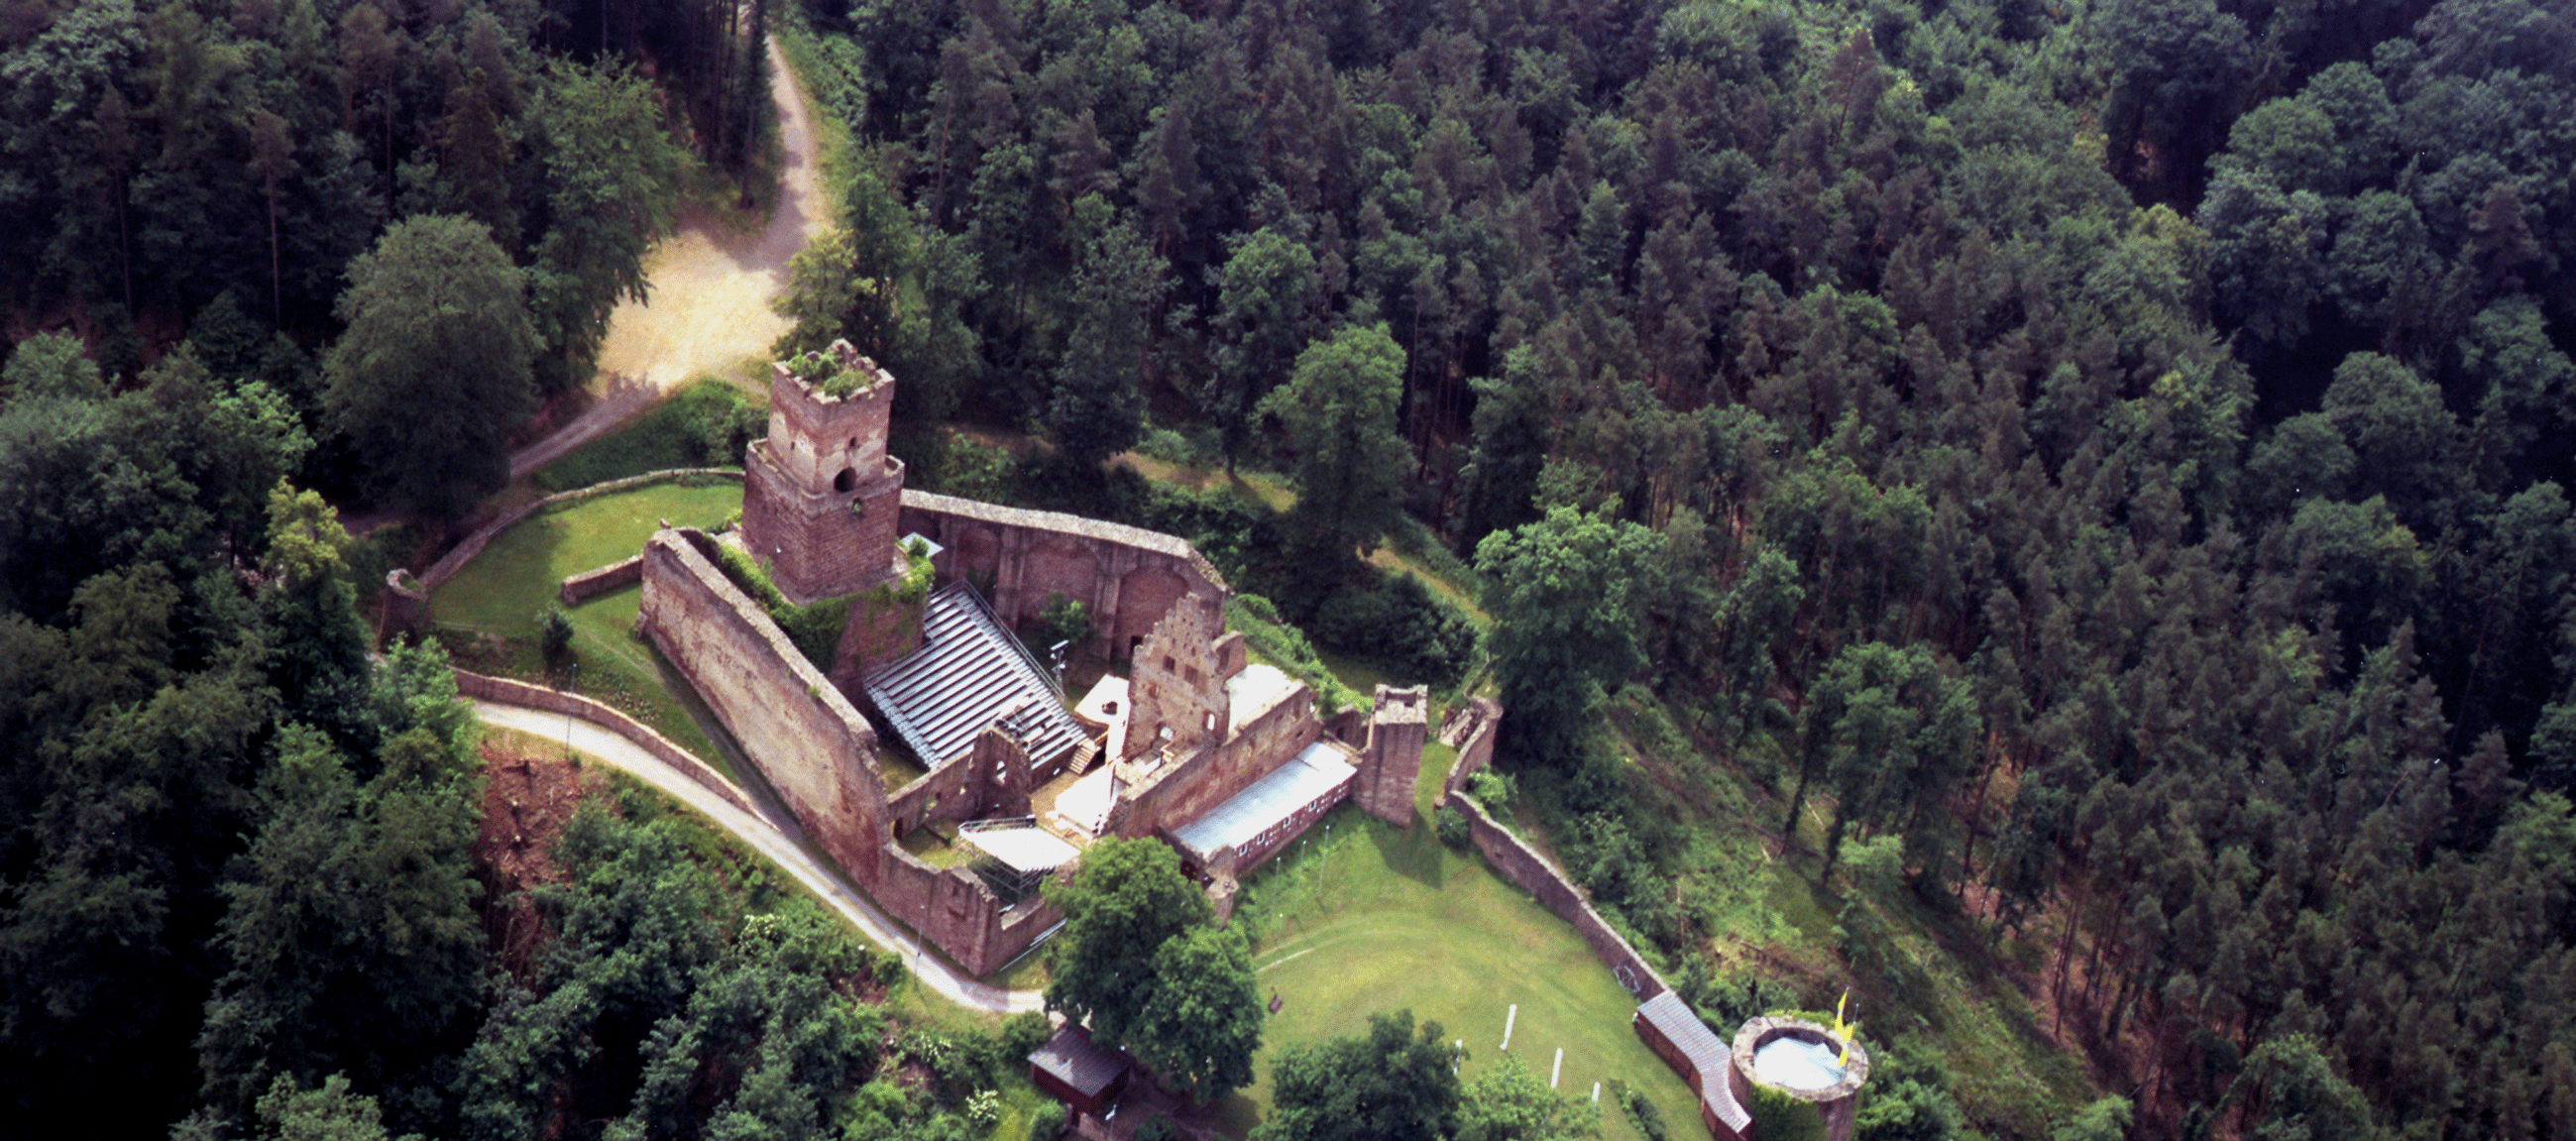  Burg 2015 - copyr. F. Hofmann 